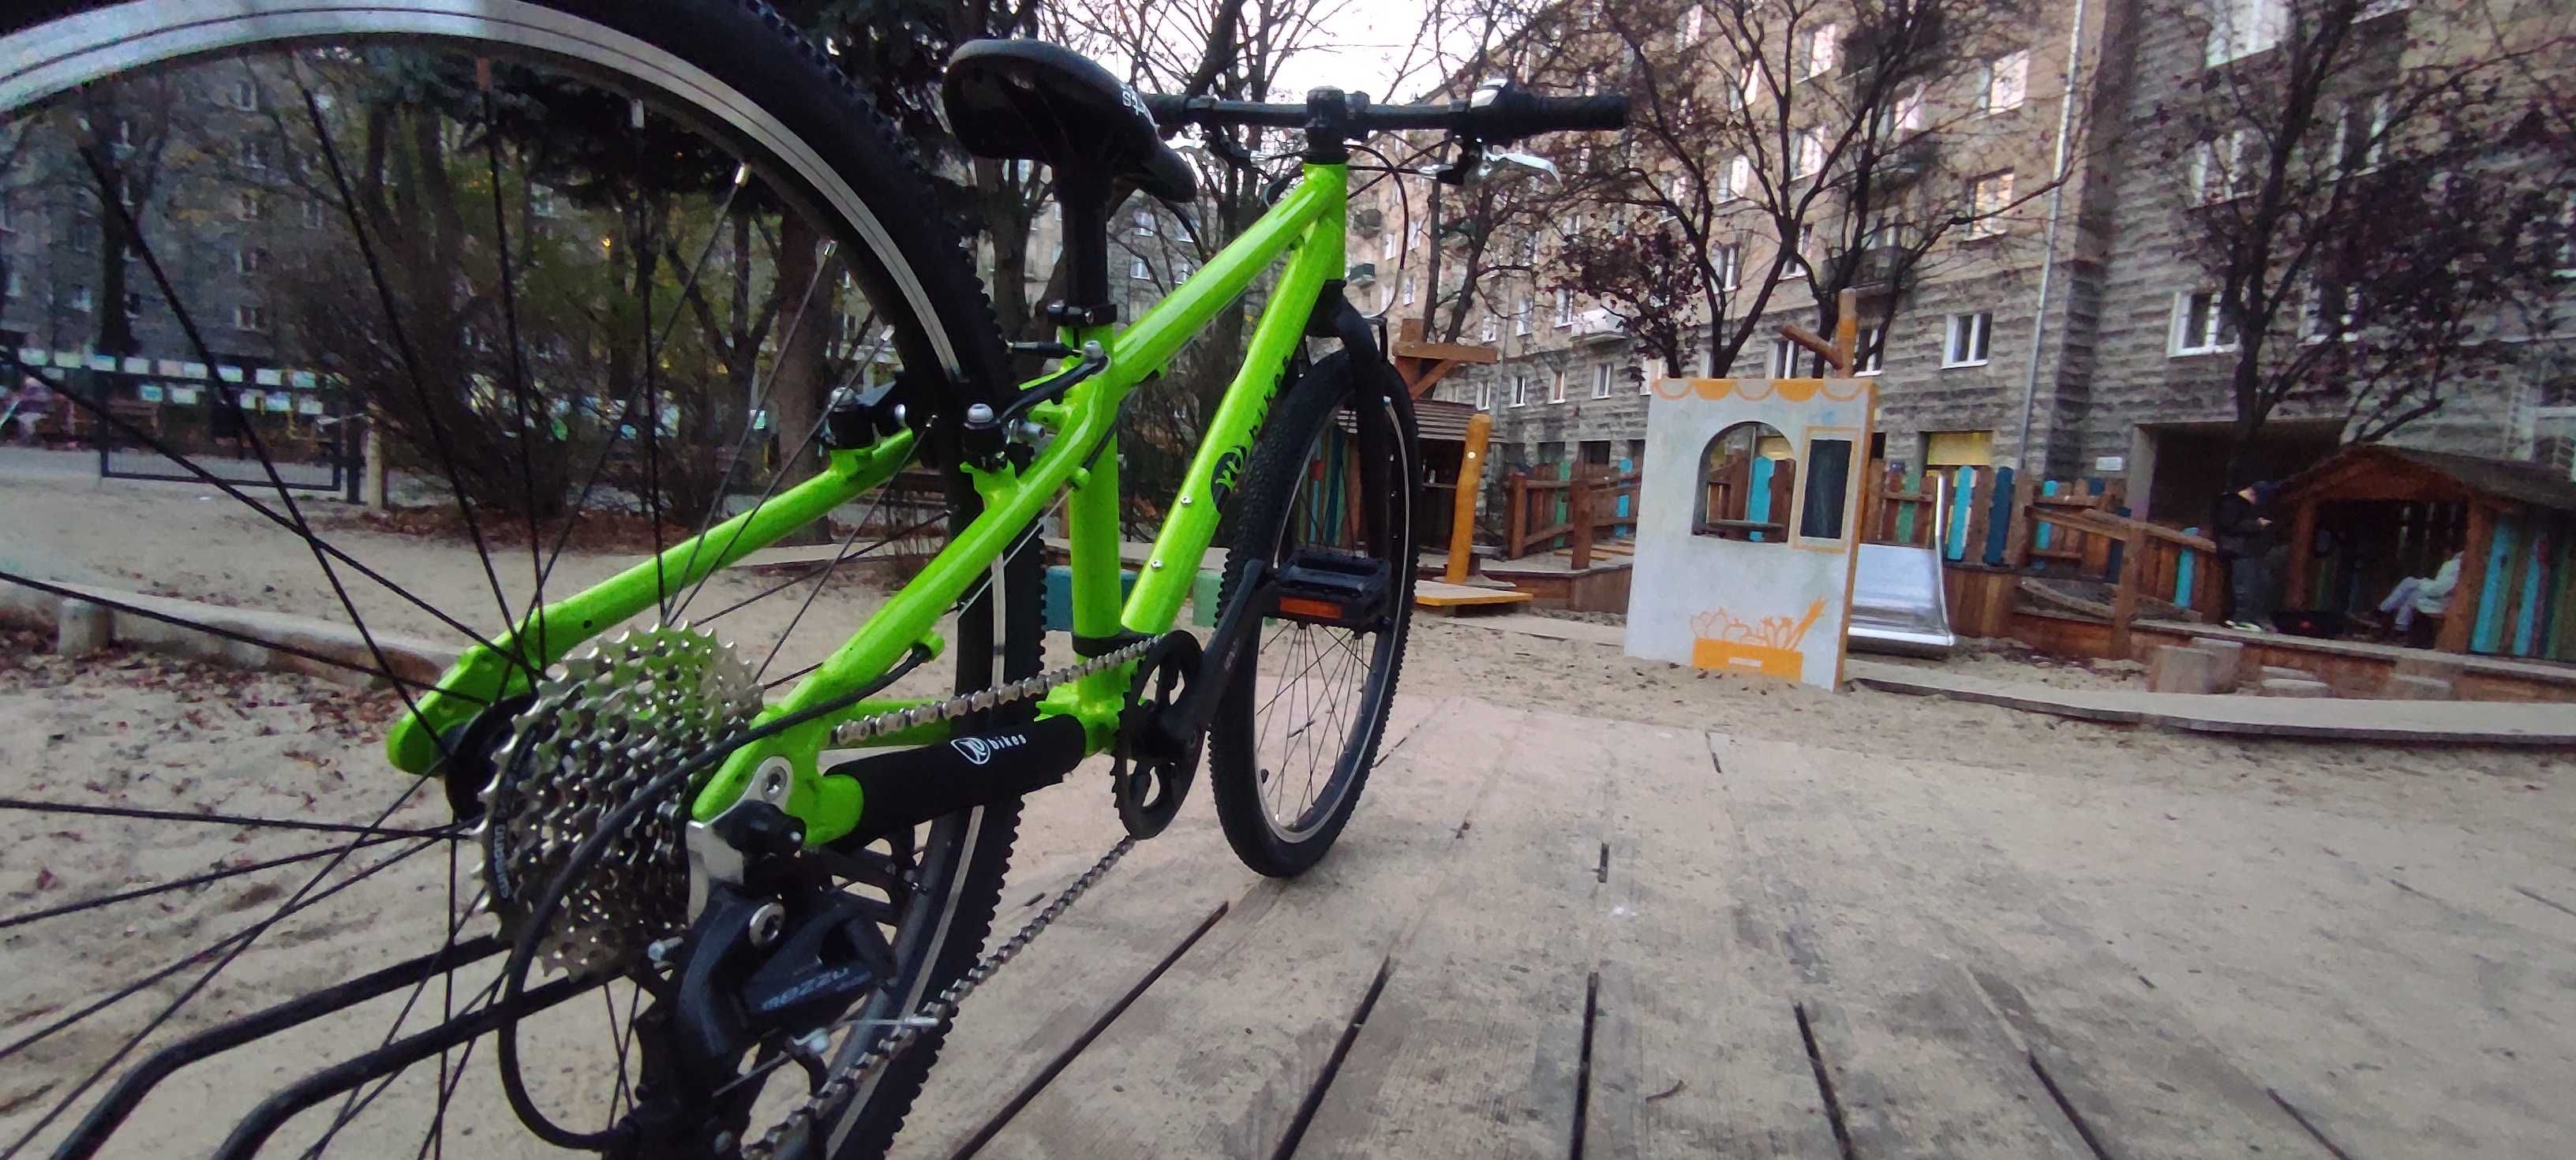 KUbikes 24S - superlekki rower dla dzieci 8,5 KG!!! - bajkids.pl